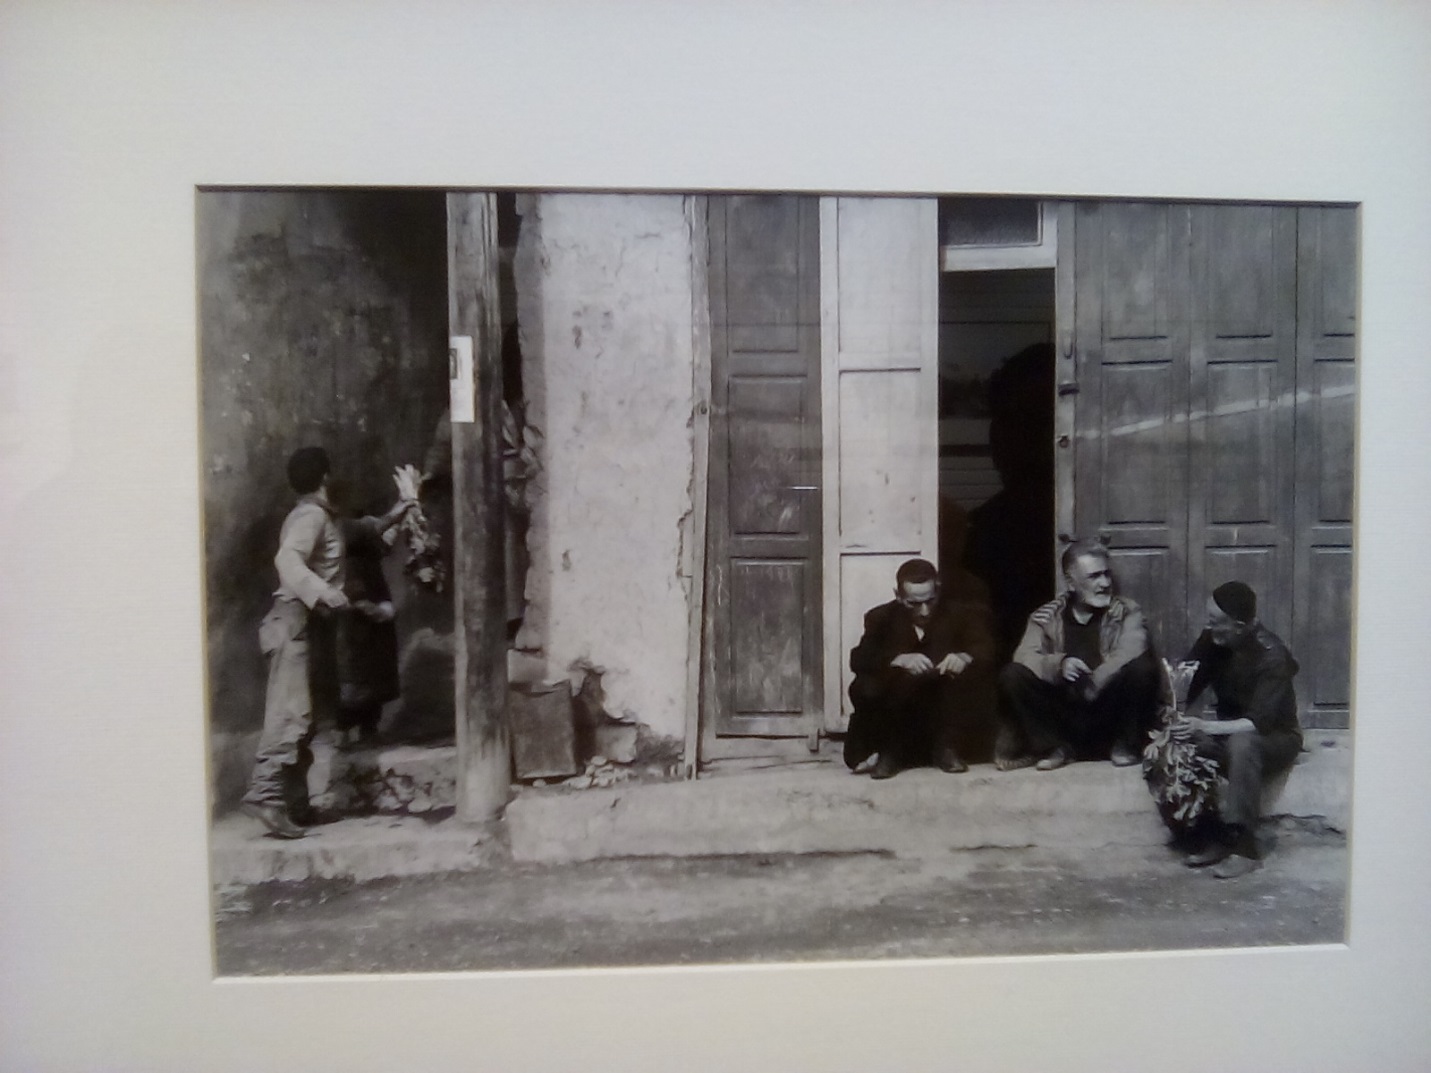 نمایشگاه عکس ماسوله حمید جبلی گالری اتبین